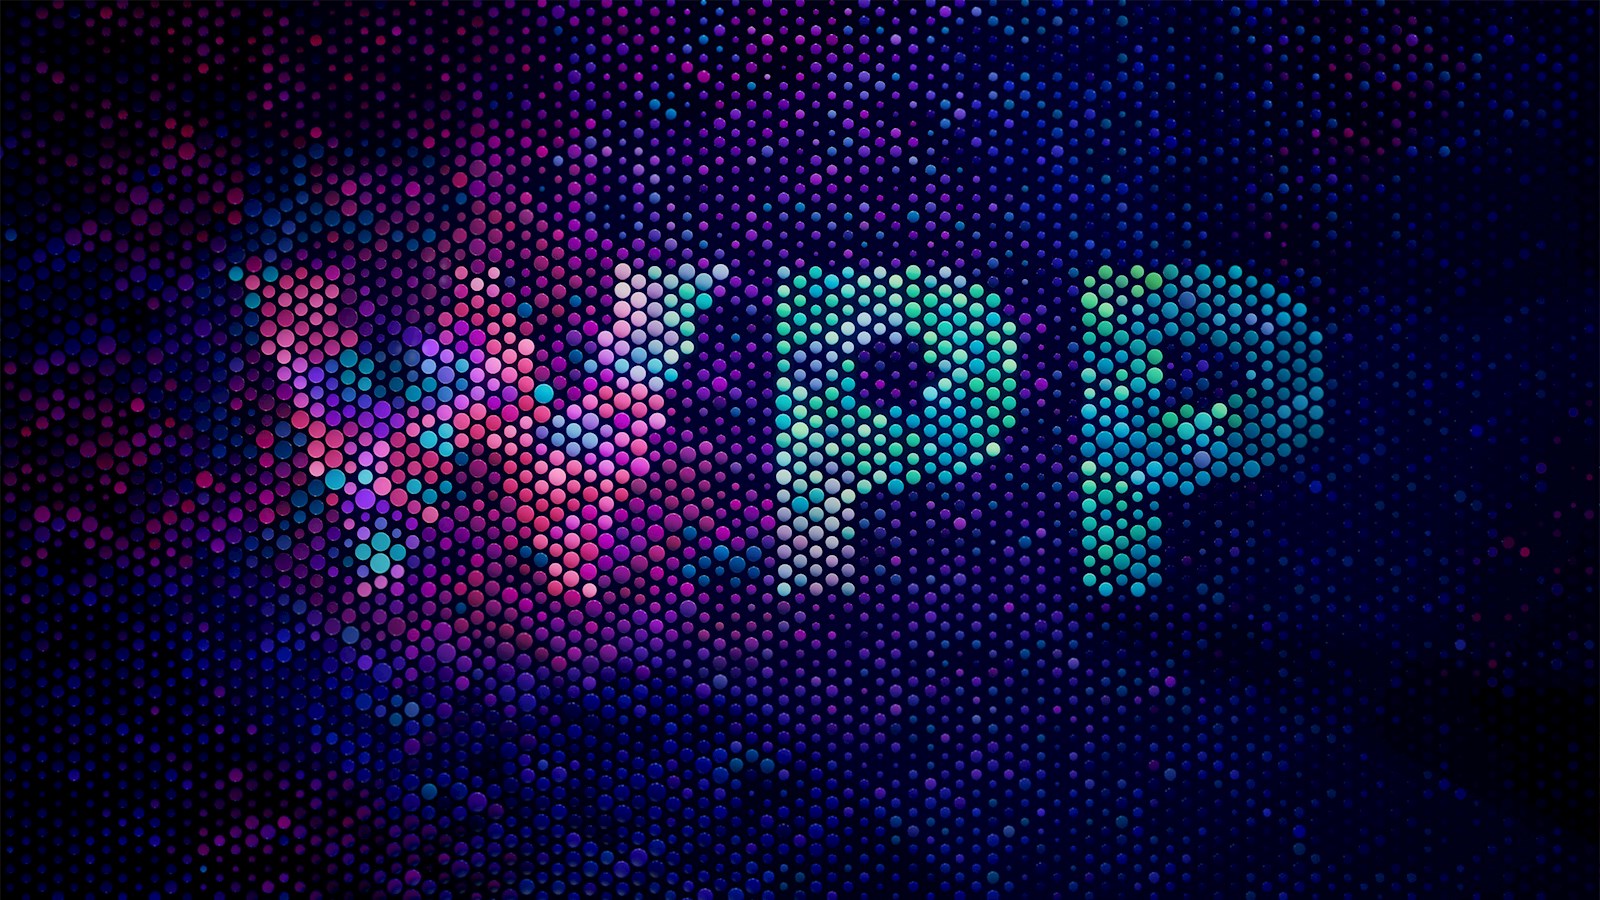 WPP logo transformed